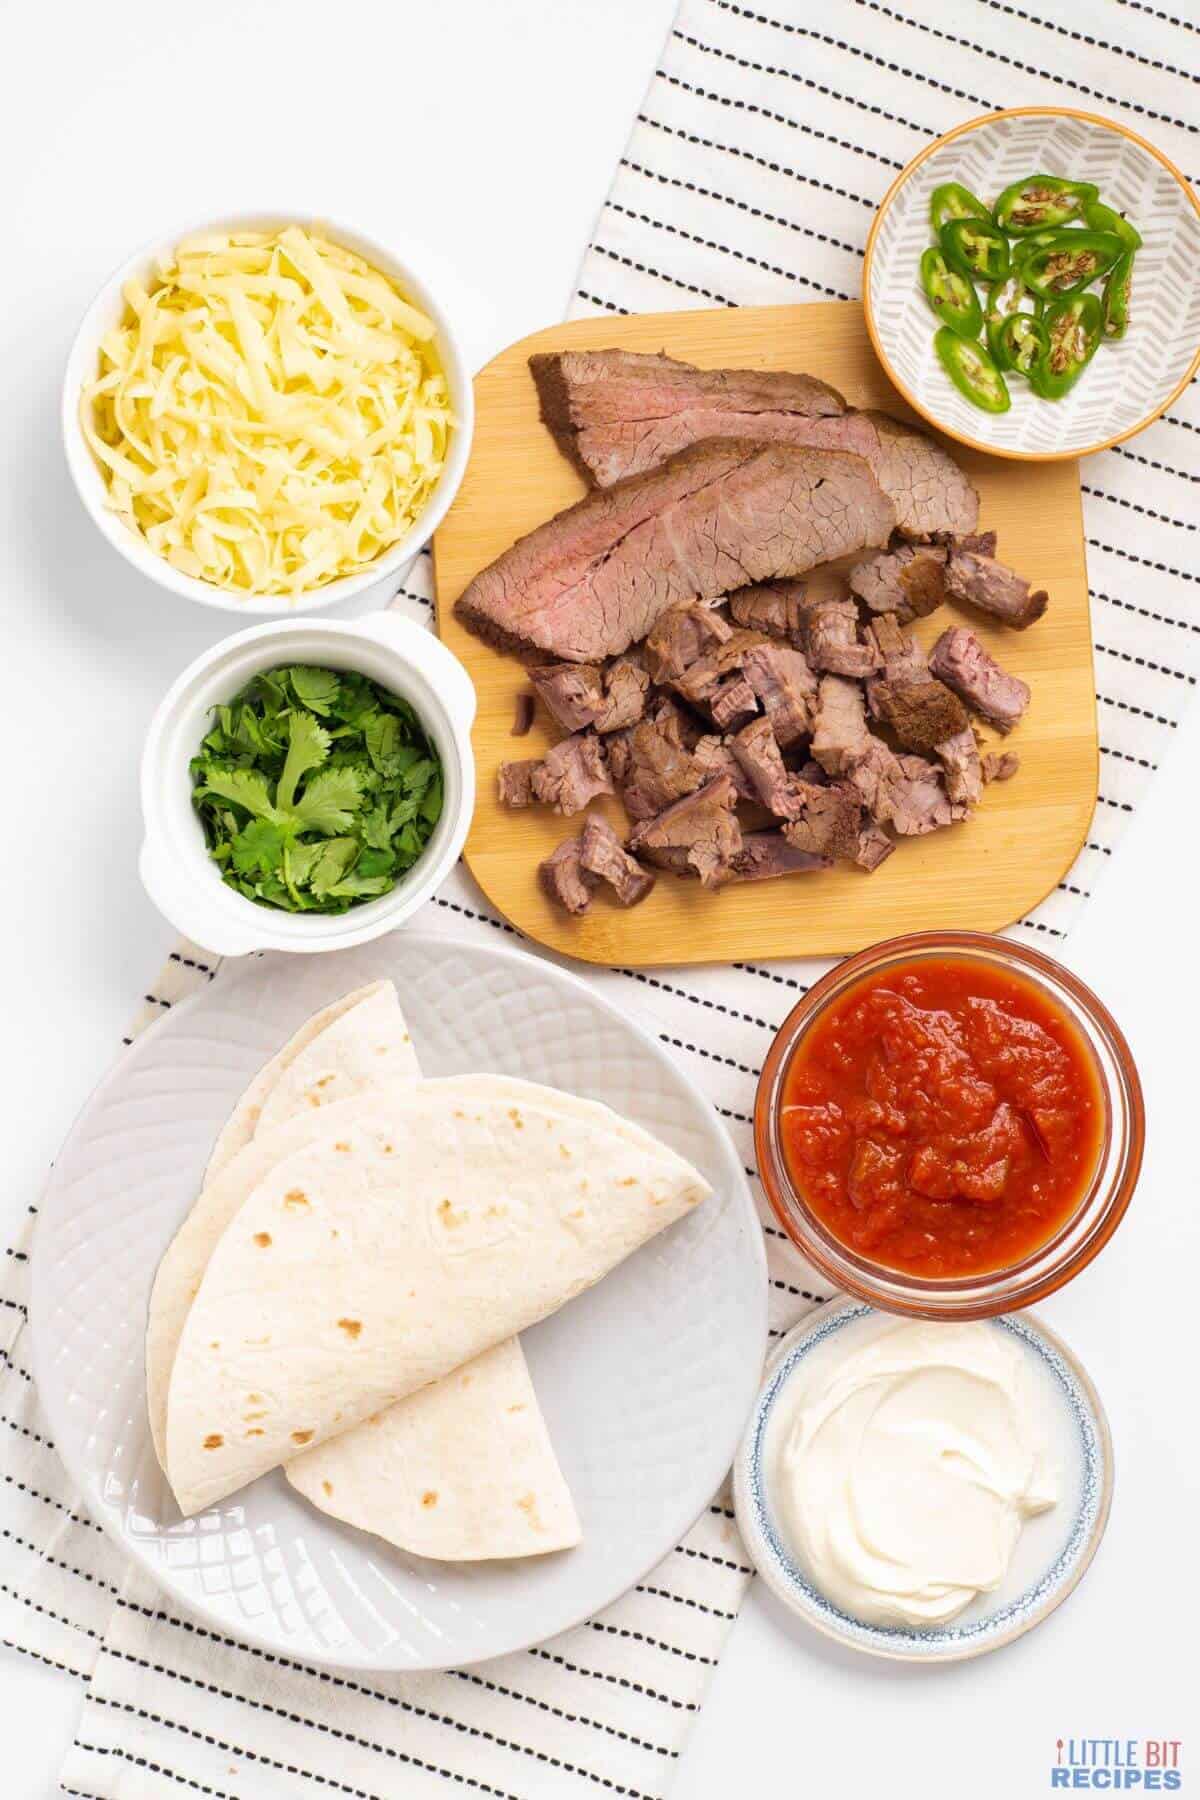 ingredients for carne asada steak quesadillas.